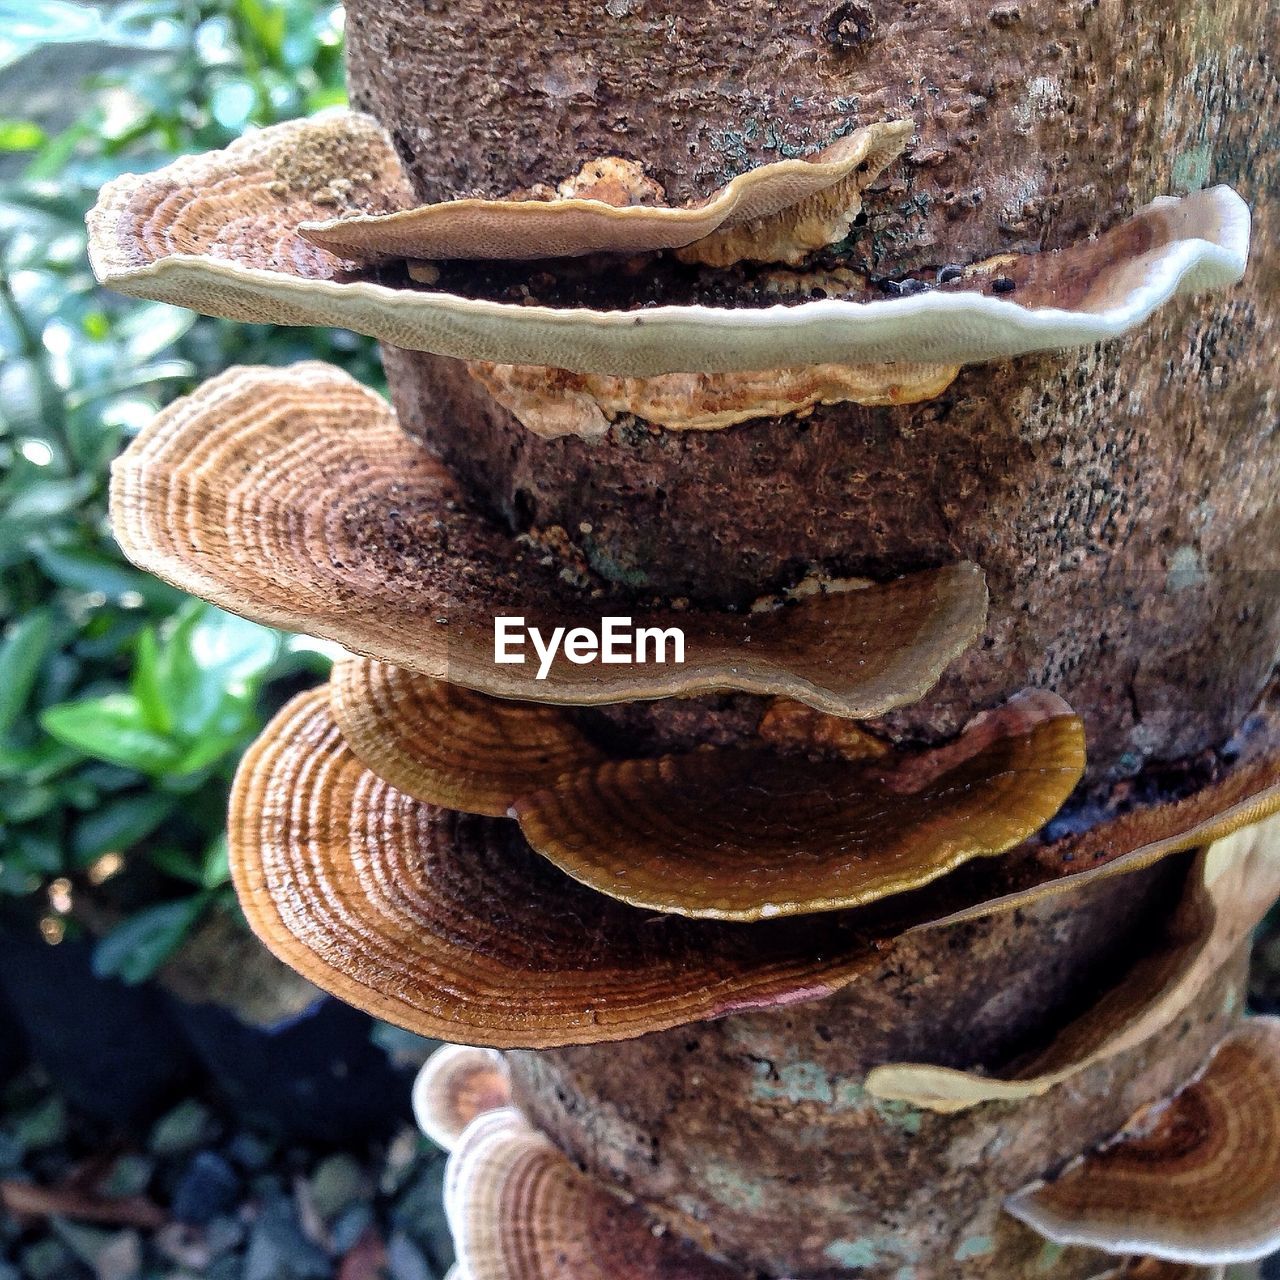 Mushrooms growing on tree